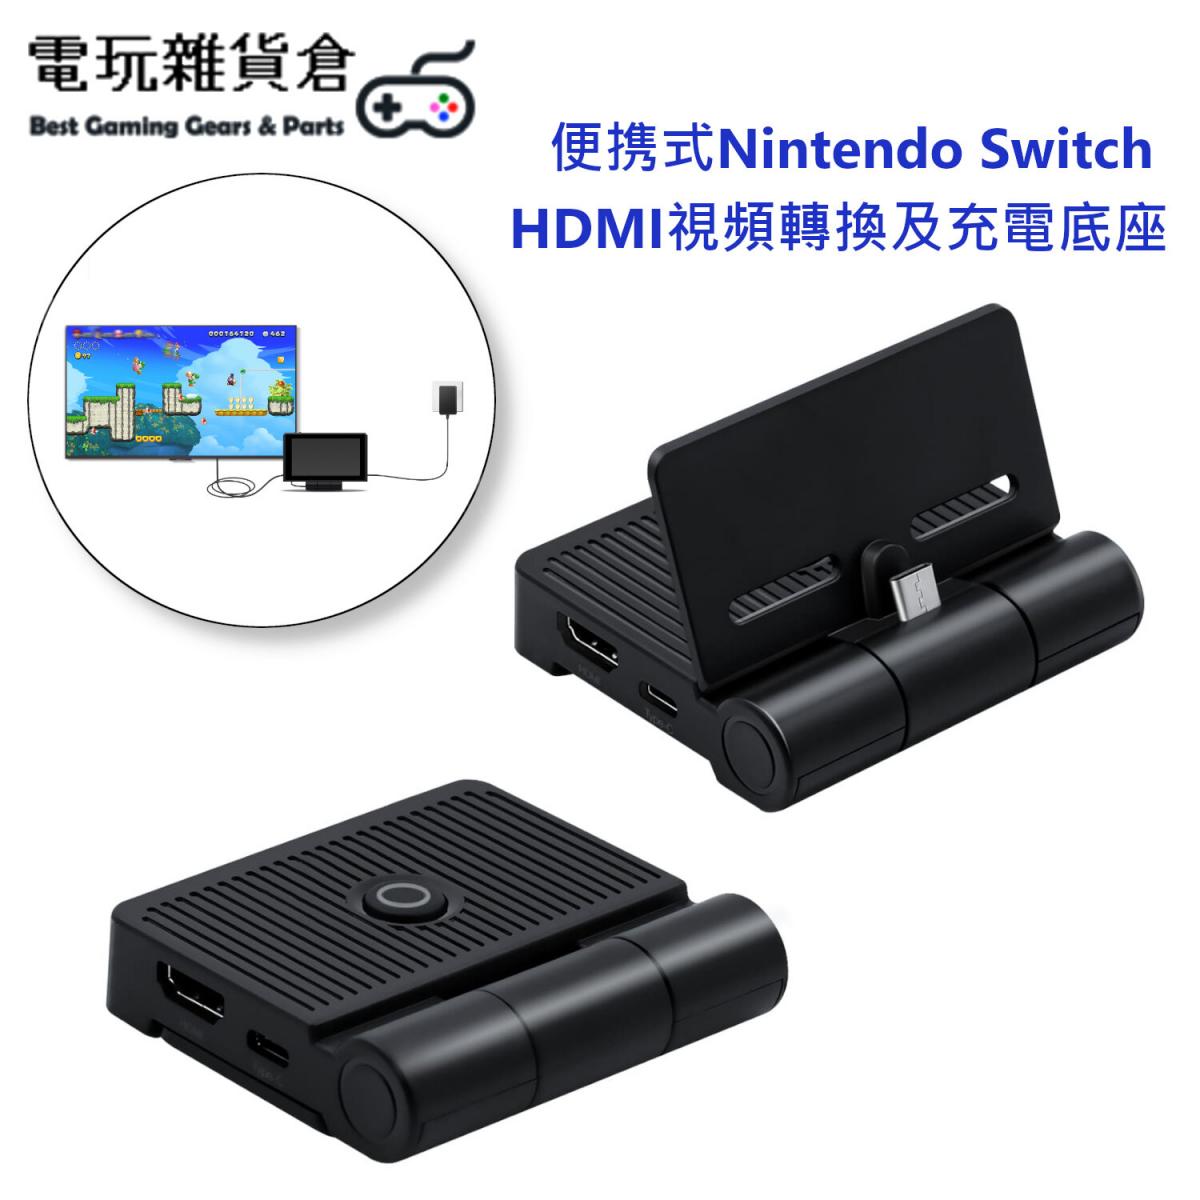 便携式Nintendo Switch/Switch OLED專用 HDMI視頻轉換及充電底座 支援邊玩邊充電 一鍵電視及遊戲機螢幕切換